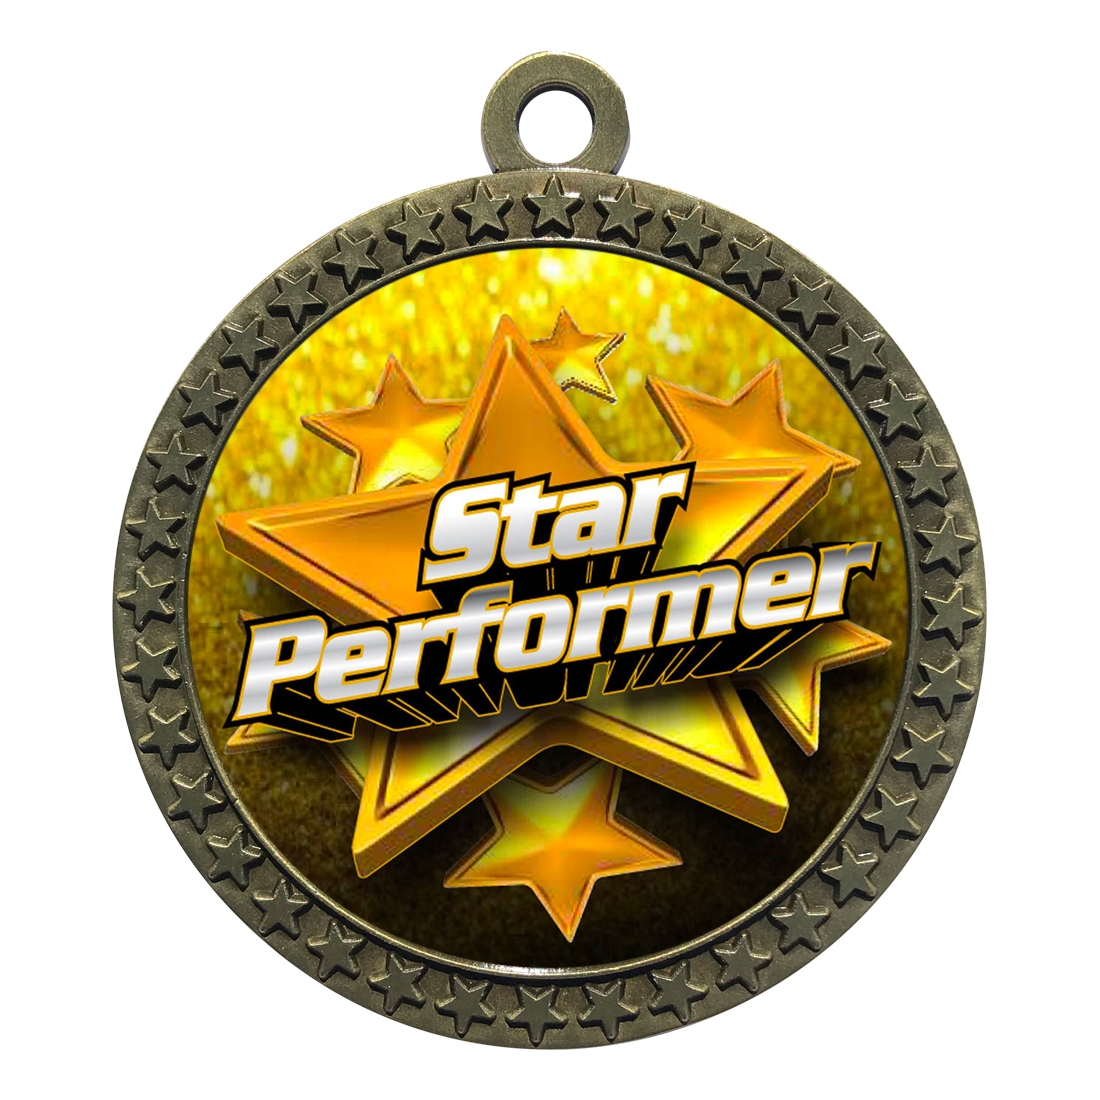 2-1/2" Star Performer Medal